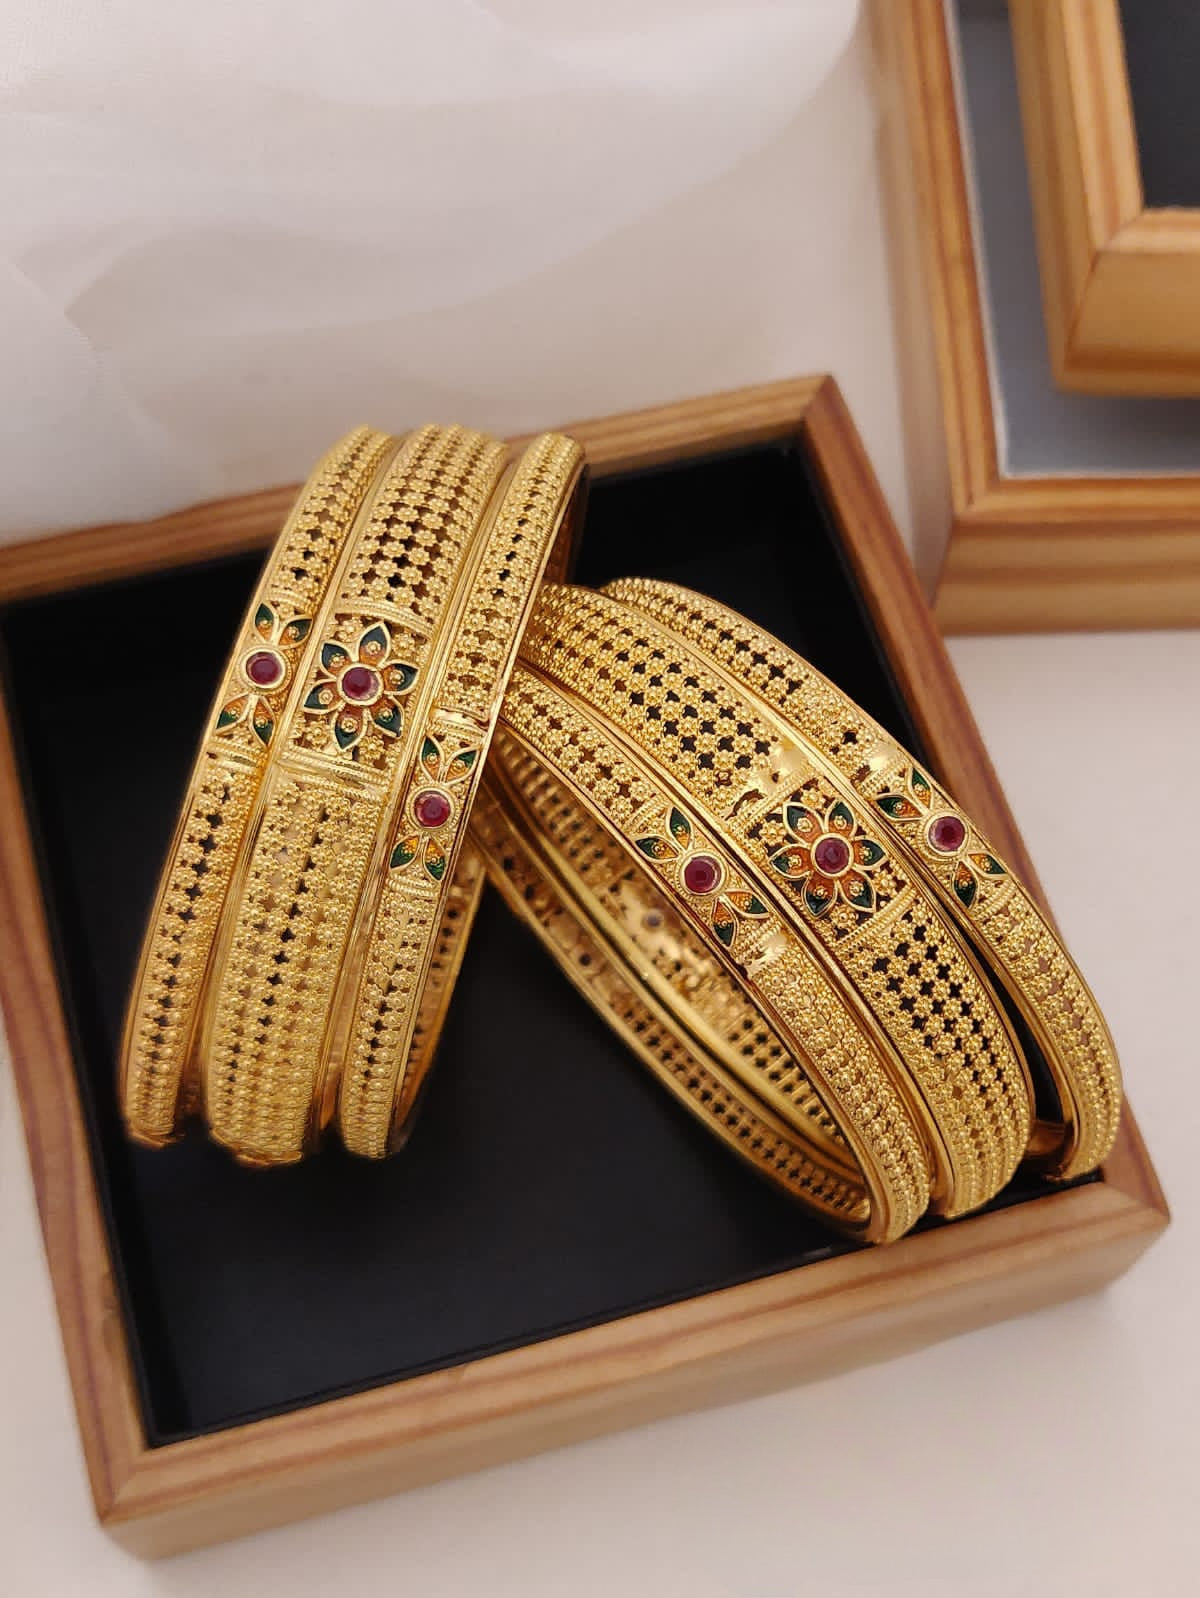 Floral design 22k matte finish gold plated 6 pcs. bangles, 1gm gold bangles, Latest design Fashion set bangles, Indian traditional bangle set, Bangle Bracelets